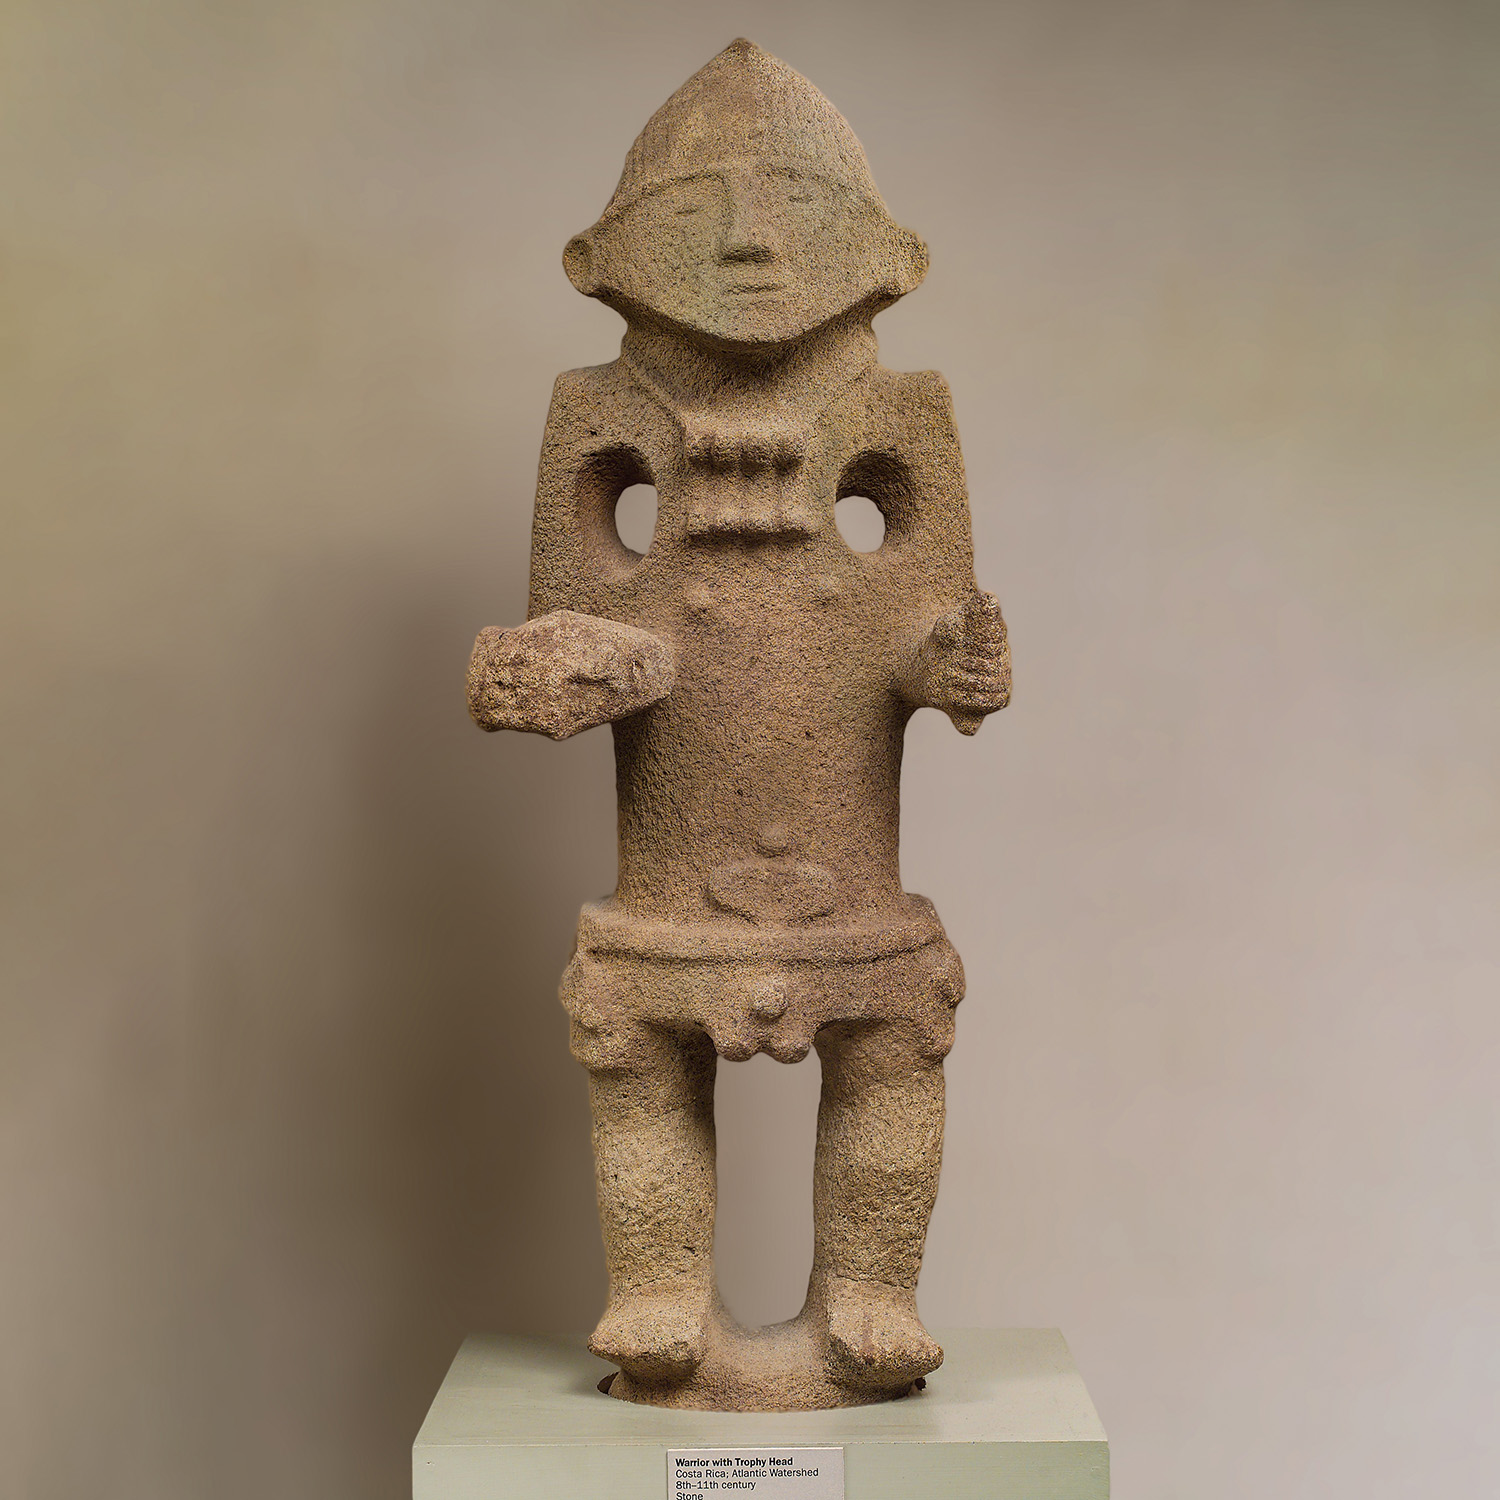 Воин-жрец. Чирики, Коста-Рика, VIII-XI вв. н.э. Коллекция Metropolitan Museum of Art.